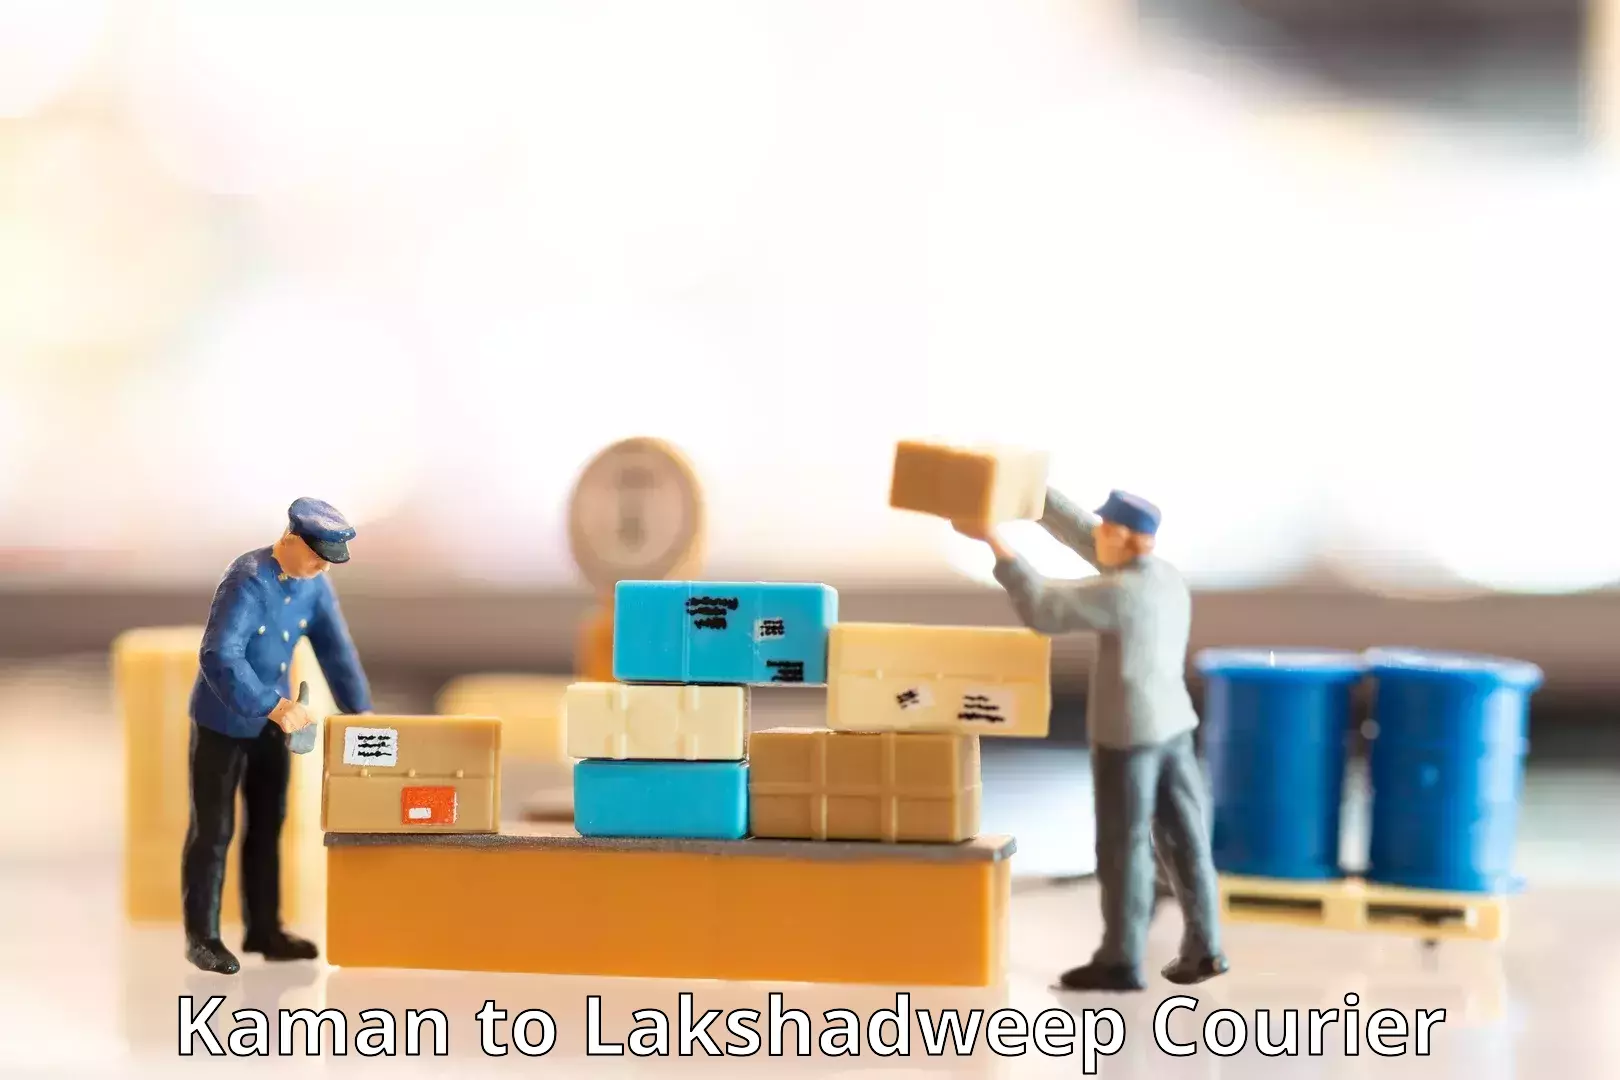 Cross-border shipping Kaman to Lakshadweep